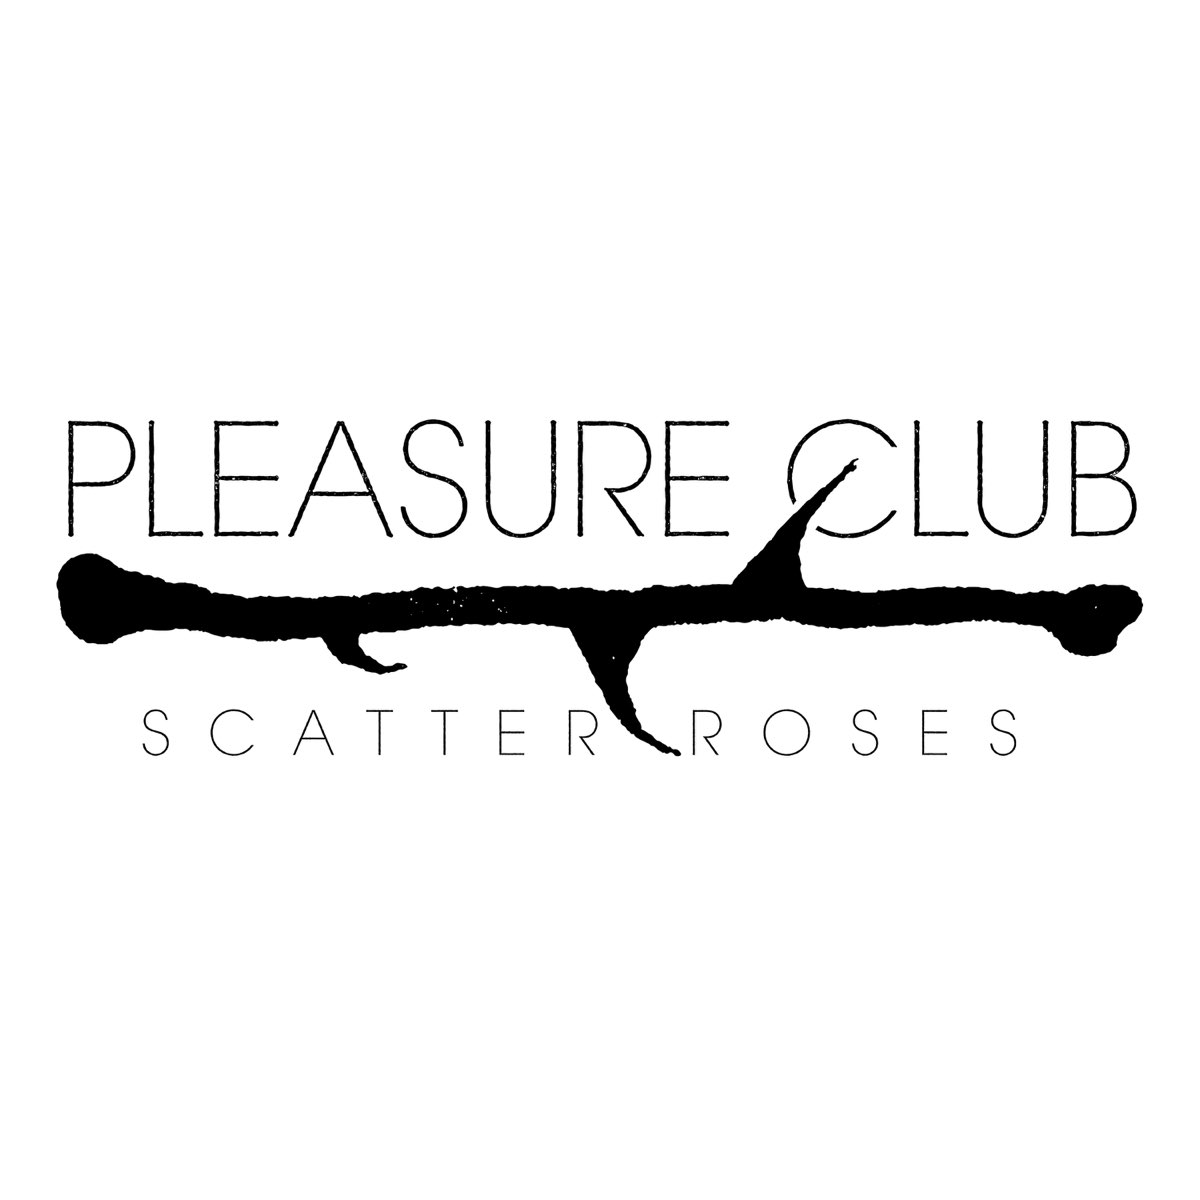 Pleasure песня. Pleasure Club.